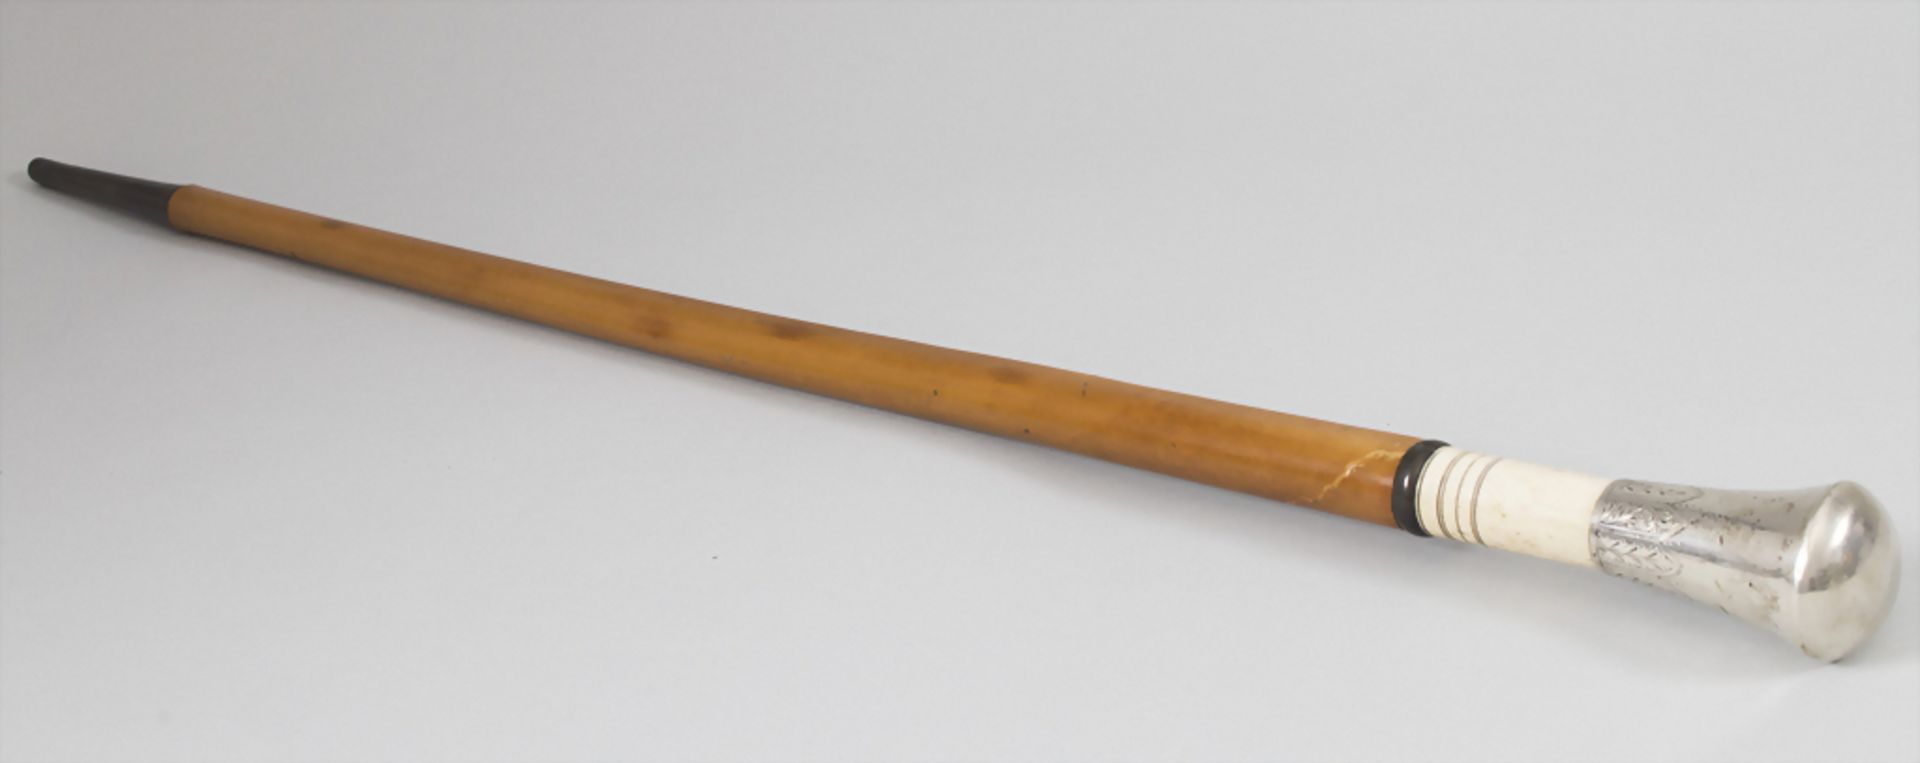 Spazierstock / A walking stick / cane, um 1900Material: Silber, Horn, Elfenbein, Malak - Bild 3 aus 3